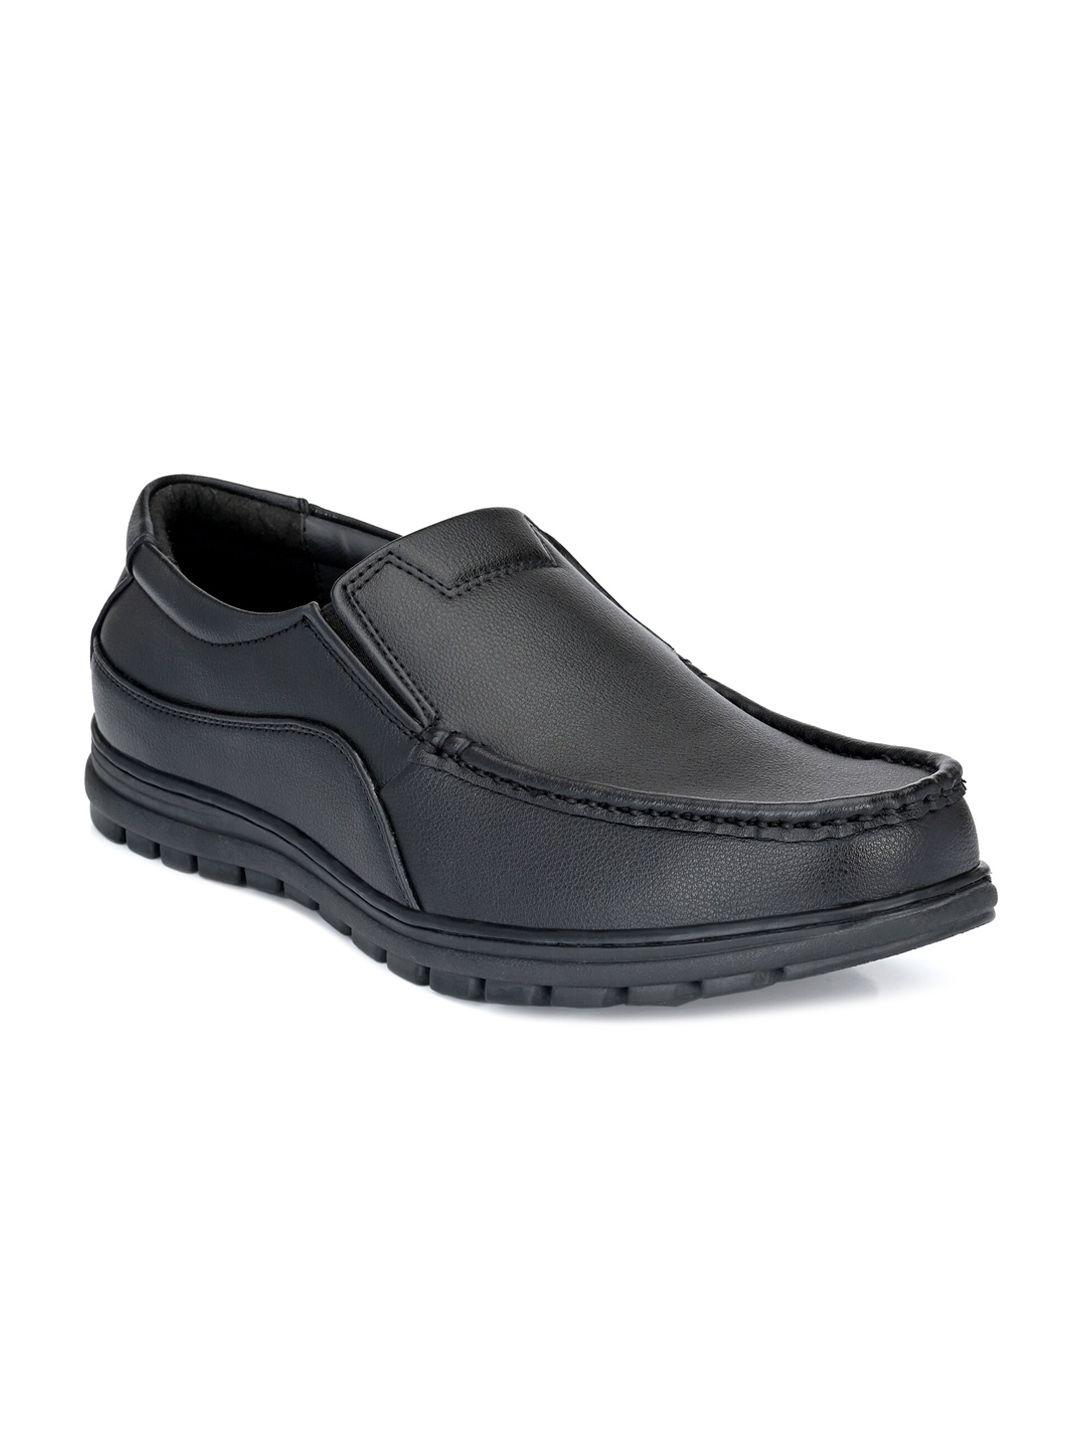 eego italy men black solid formal loafer shoe